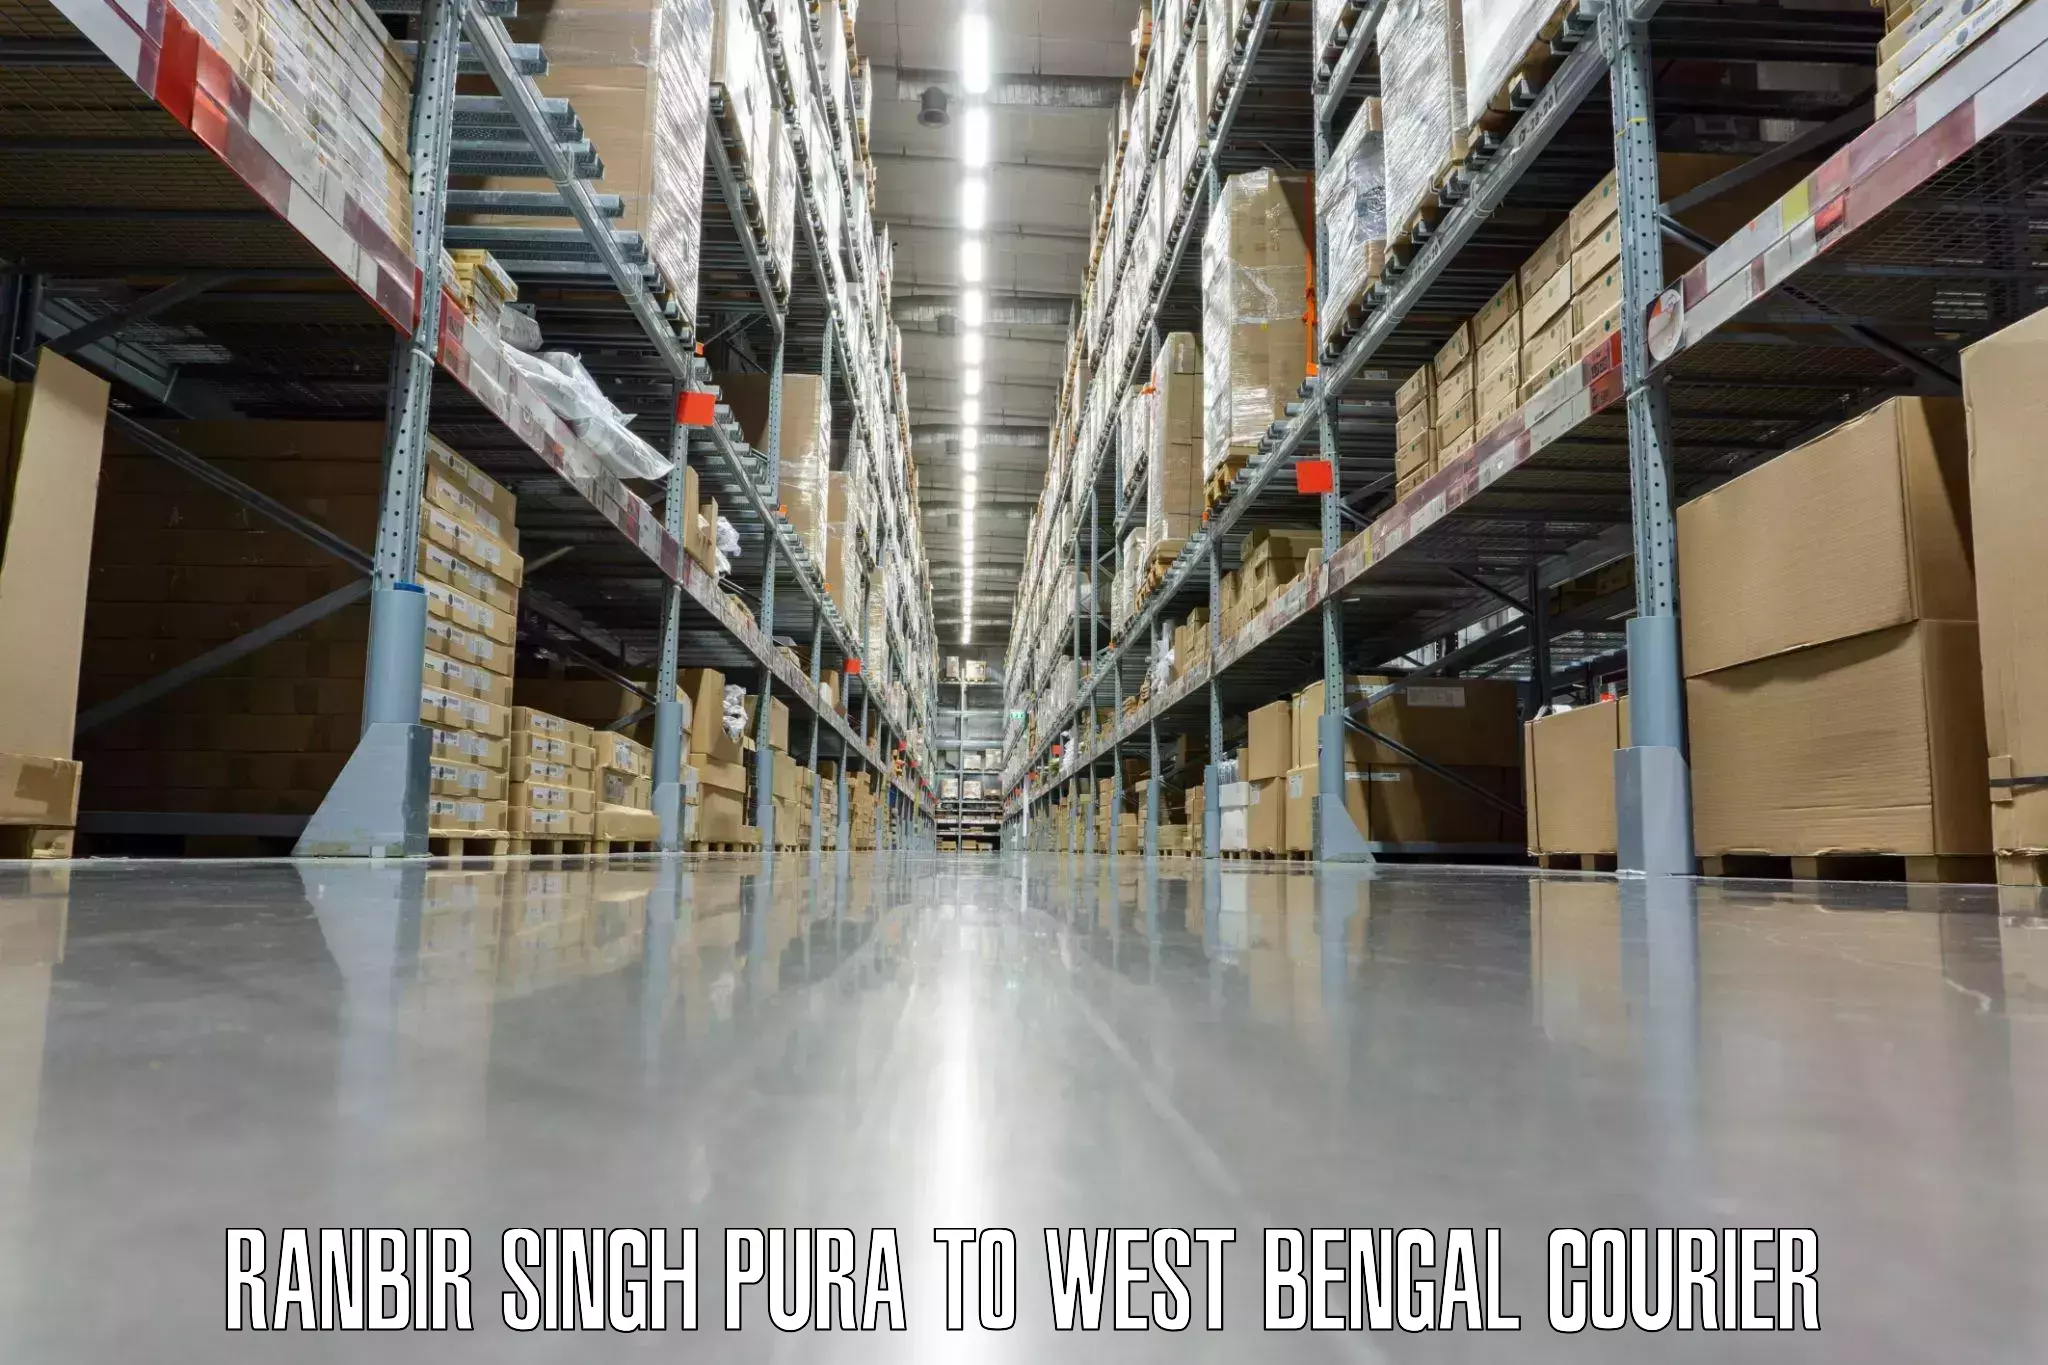 Luggage transport consultancy Ranbir Singh Pura to Panjipara